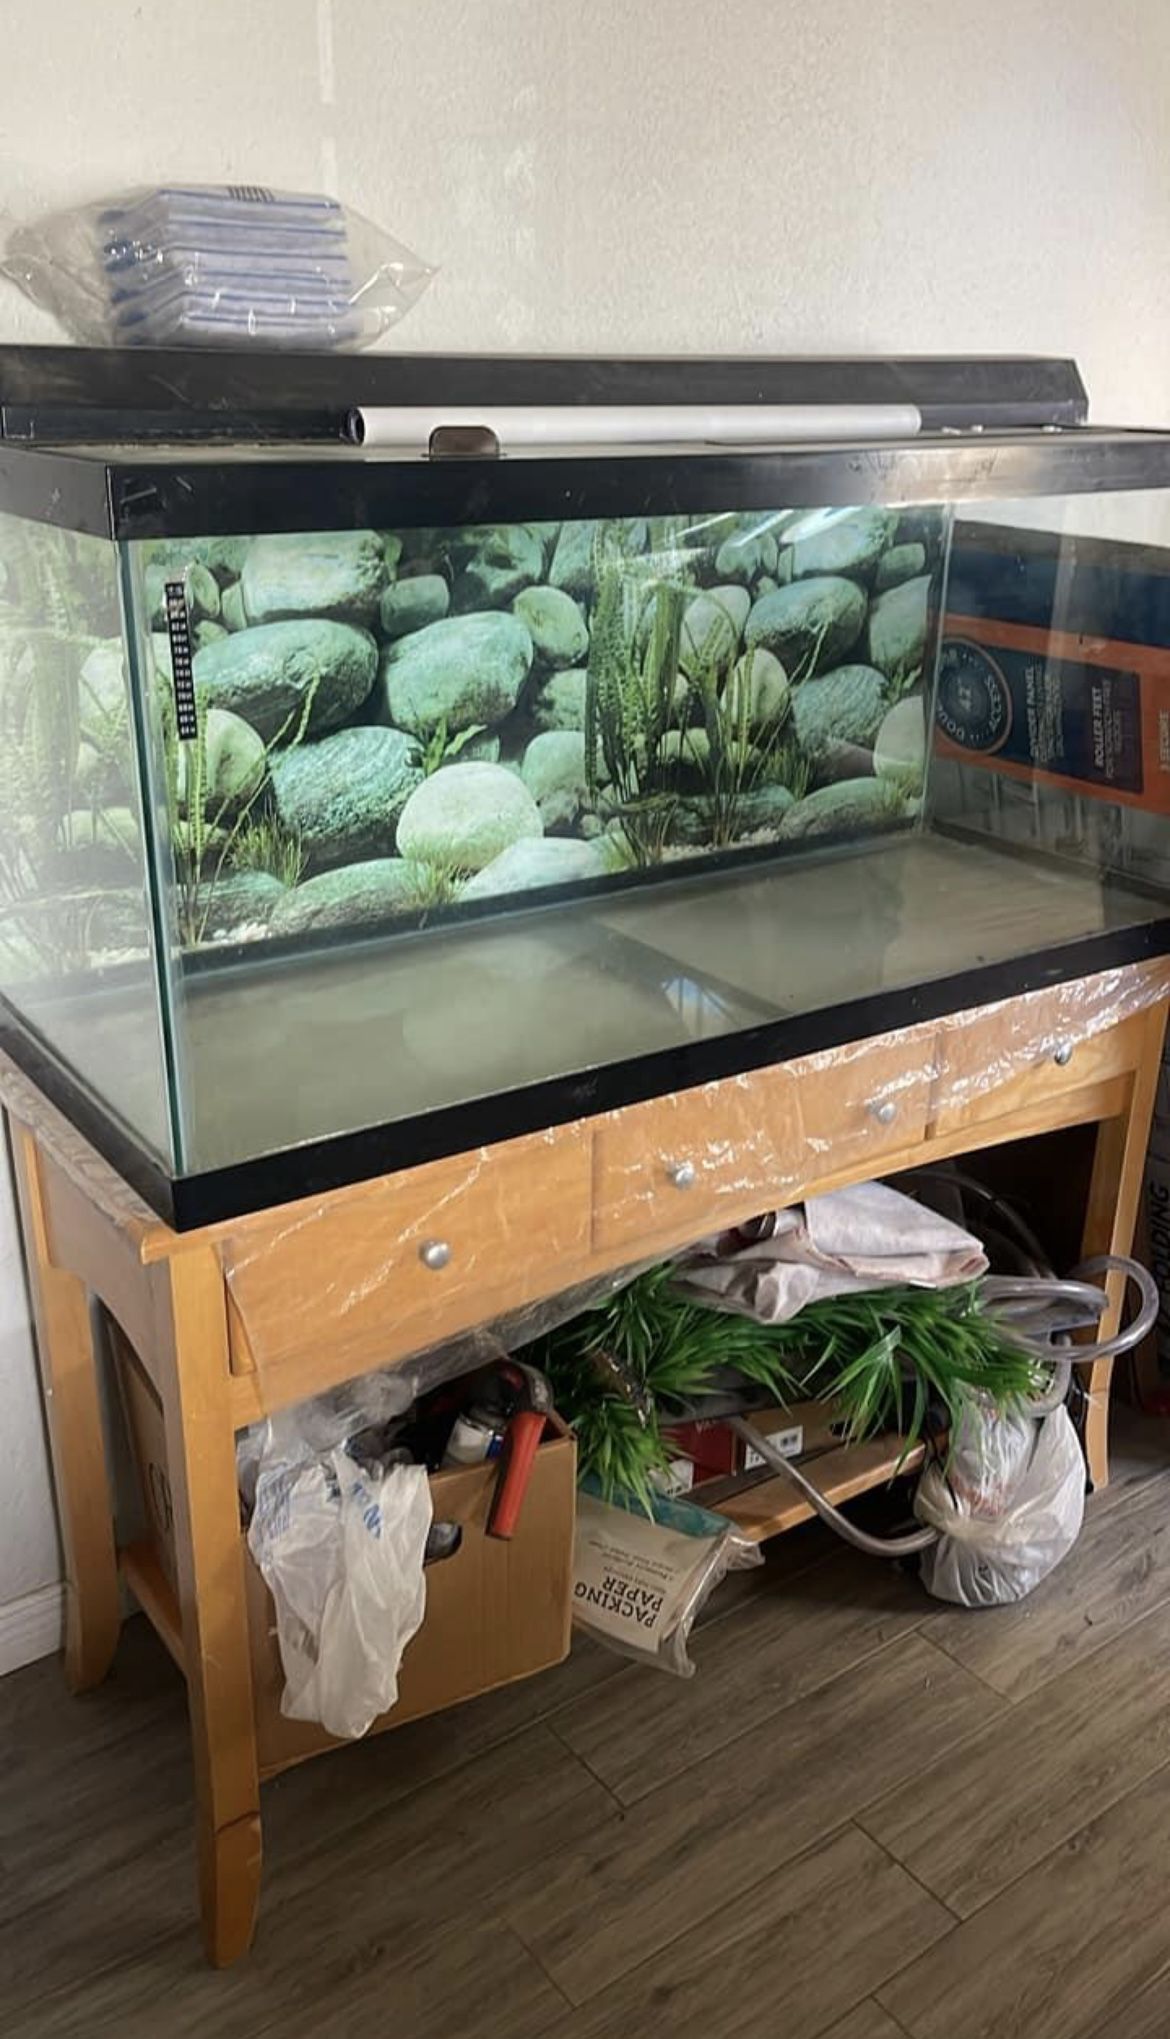 75 gallon fish tank + accessories 